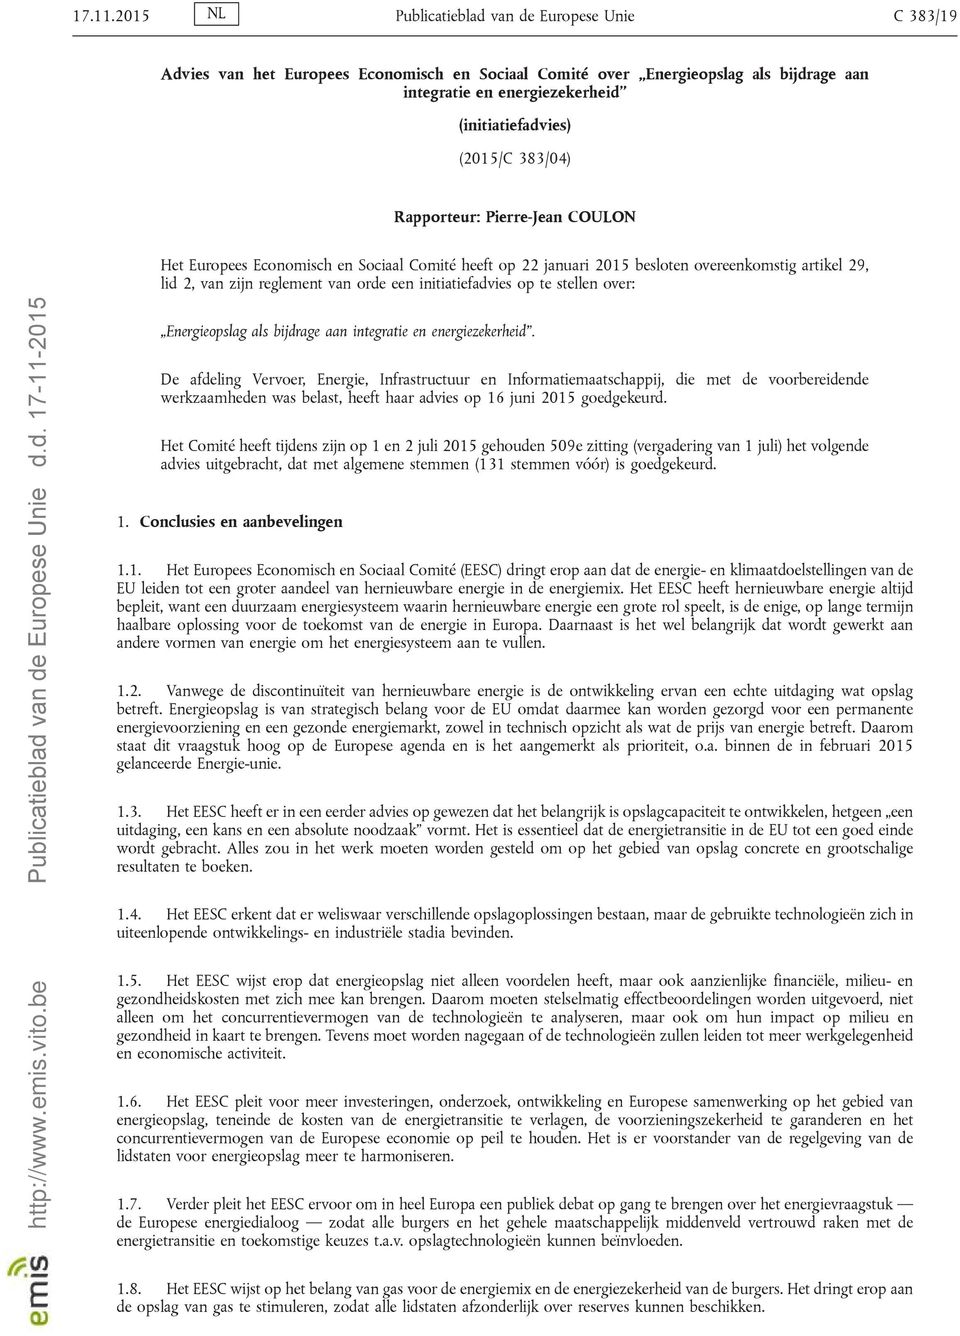 383/04) Rapporteur: Pierre-Jean COULON Het Europees Economisch en Sociaal Comité heeft op 22 januari 2015 besloten overeenkomstig artikel 29, lid 2, van zijn reglement van orde een initiatiefadvies